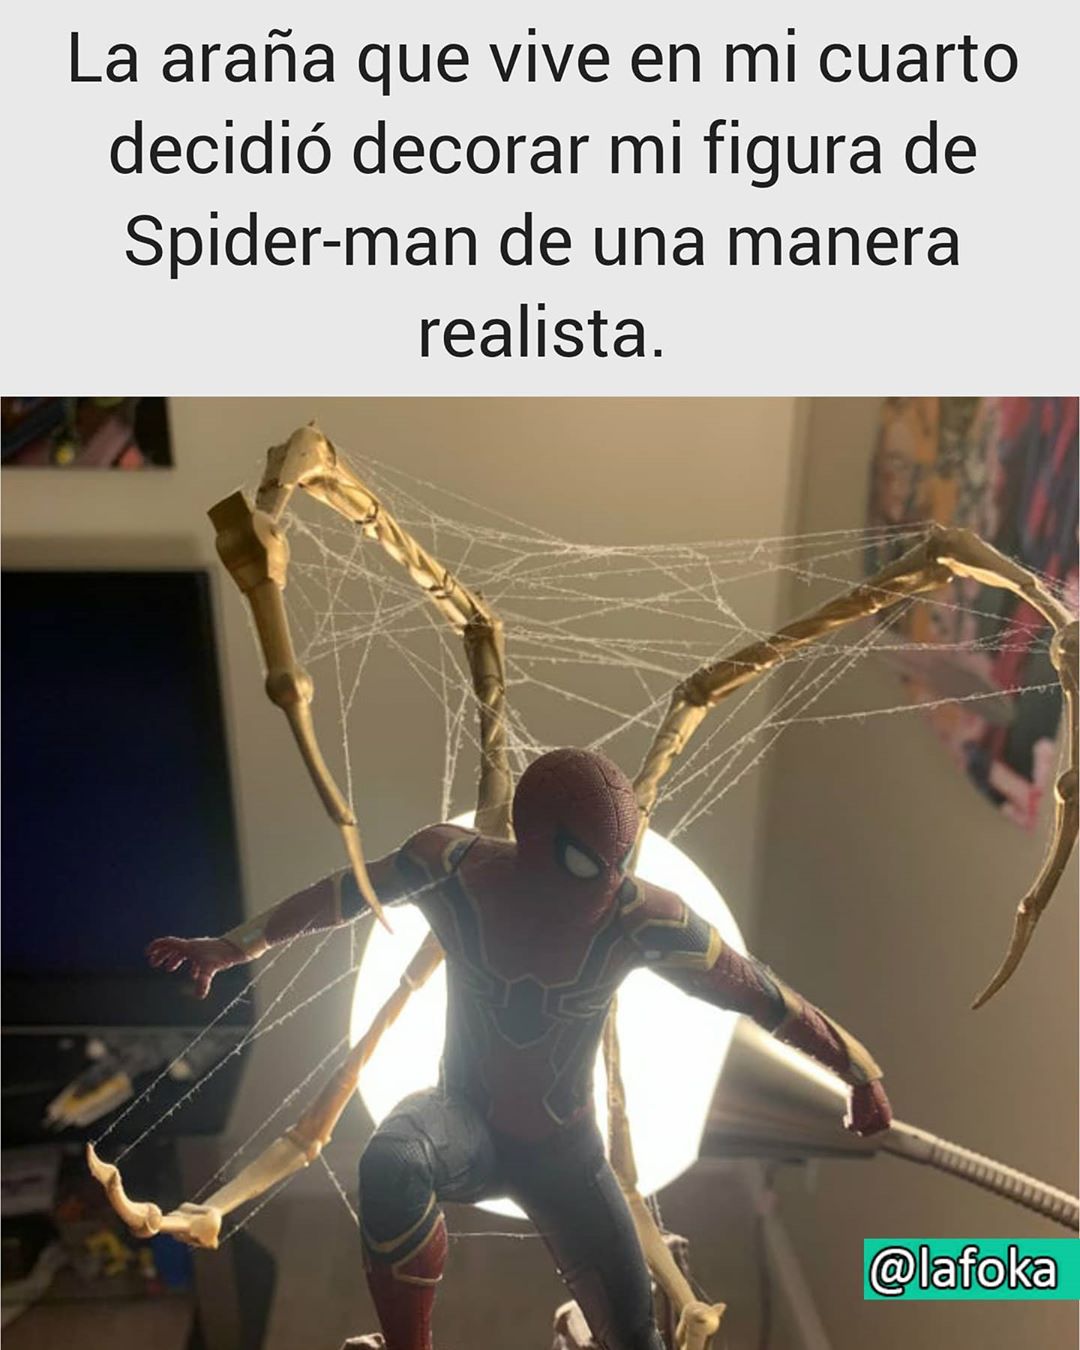 La araña que vive en mi cuarto decidió decorar mi figura de Spider-Man de una manera realista.